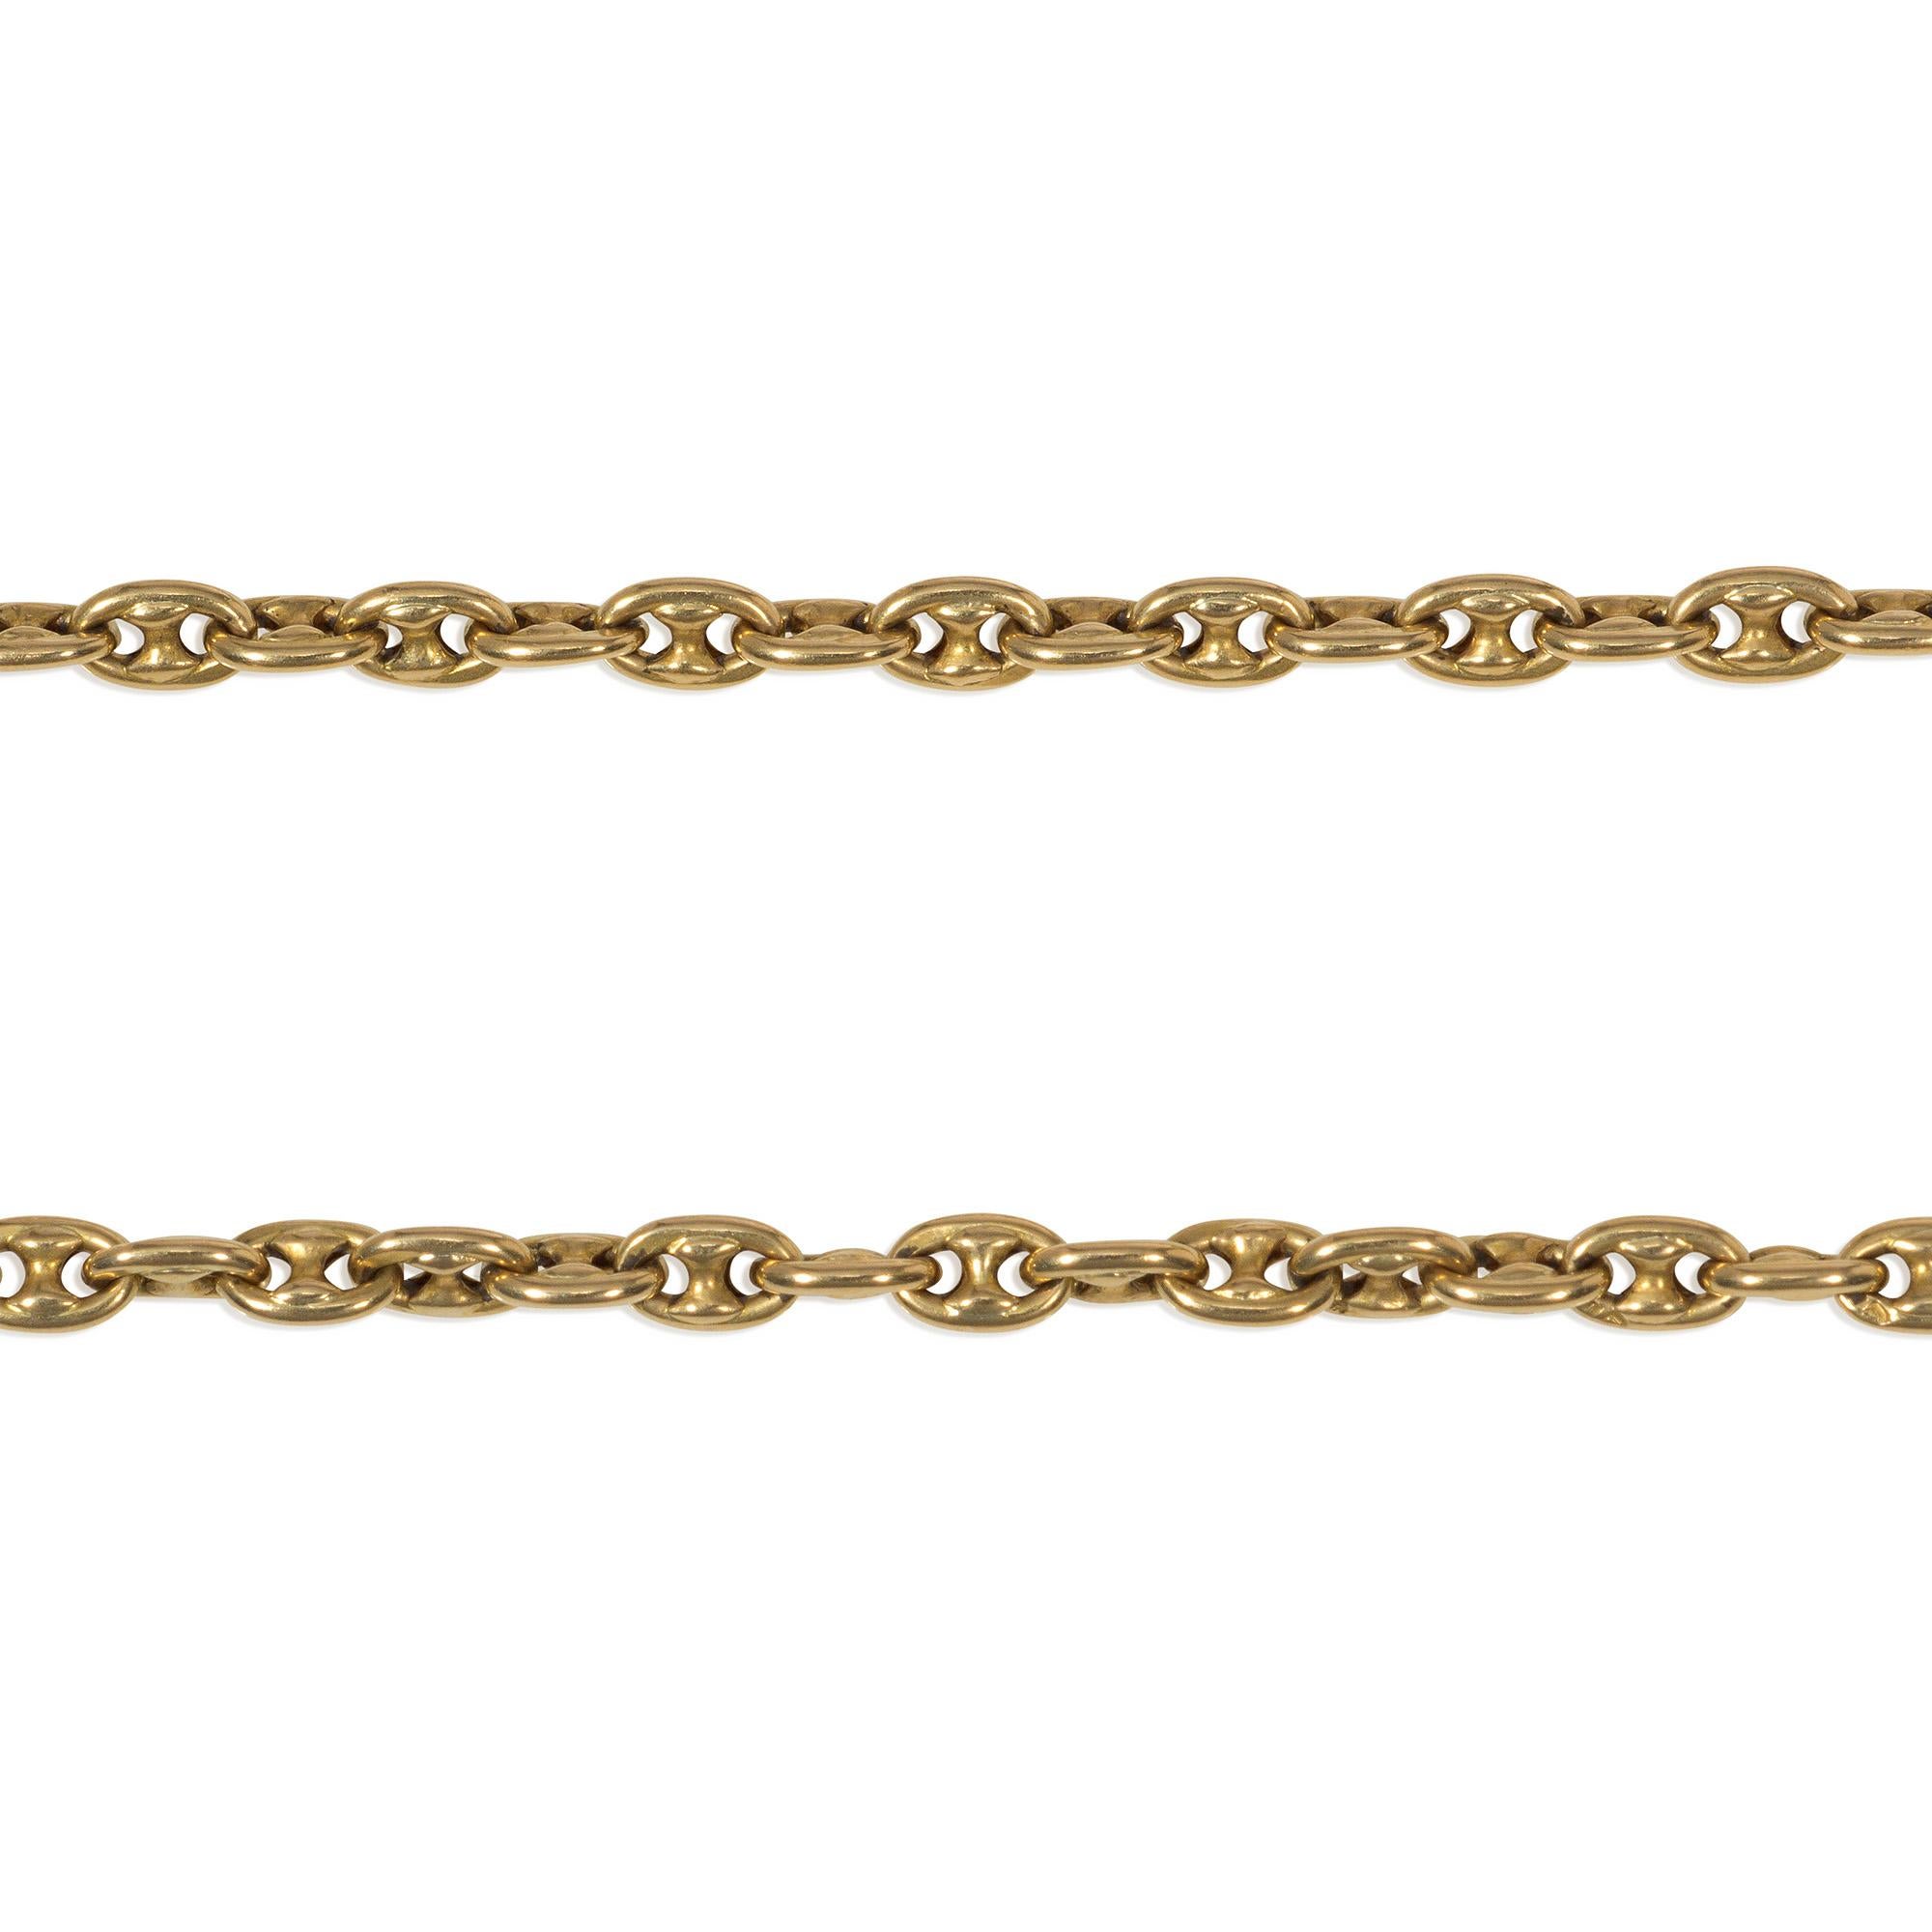 Collier long en or de l'époque victorienne, composé de maillons de chaîne d'ancrage, complété par un fermoir à charnière permettant de porter la chaîne à des longueurs multiples, en 18k.  Angleterre

* Lettre d'authenticité incluse
* Livraison